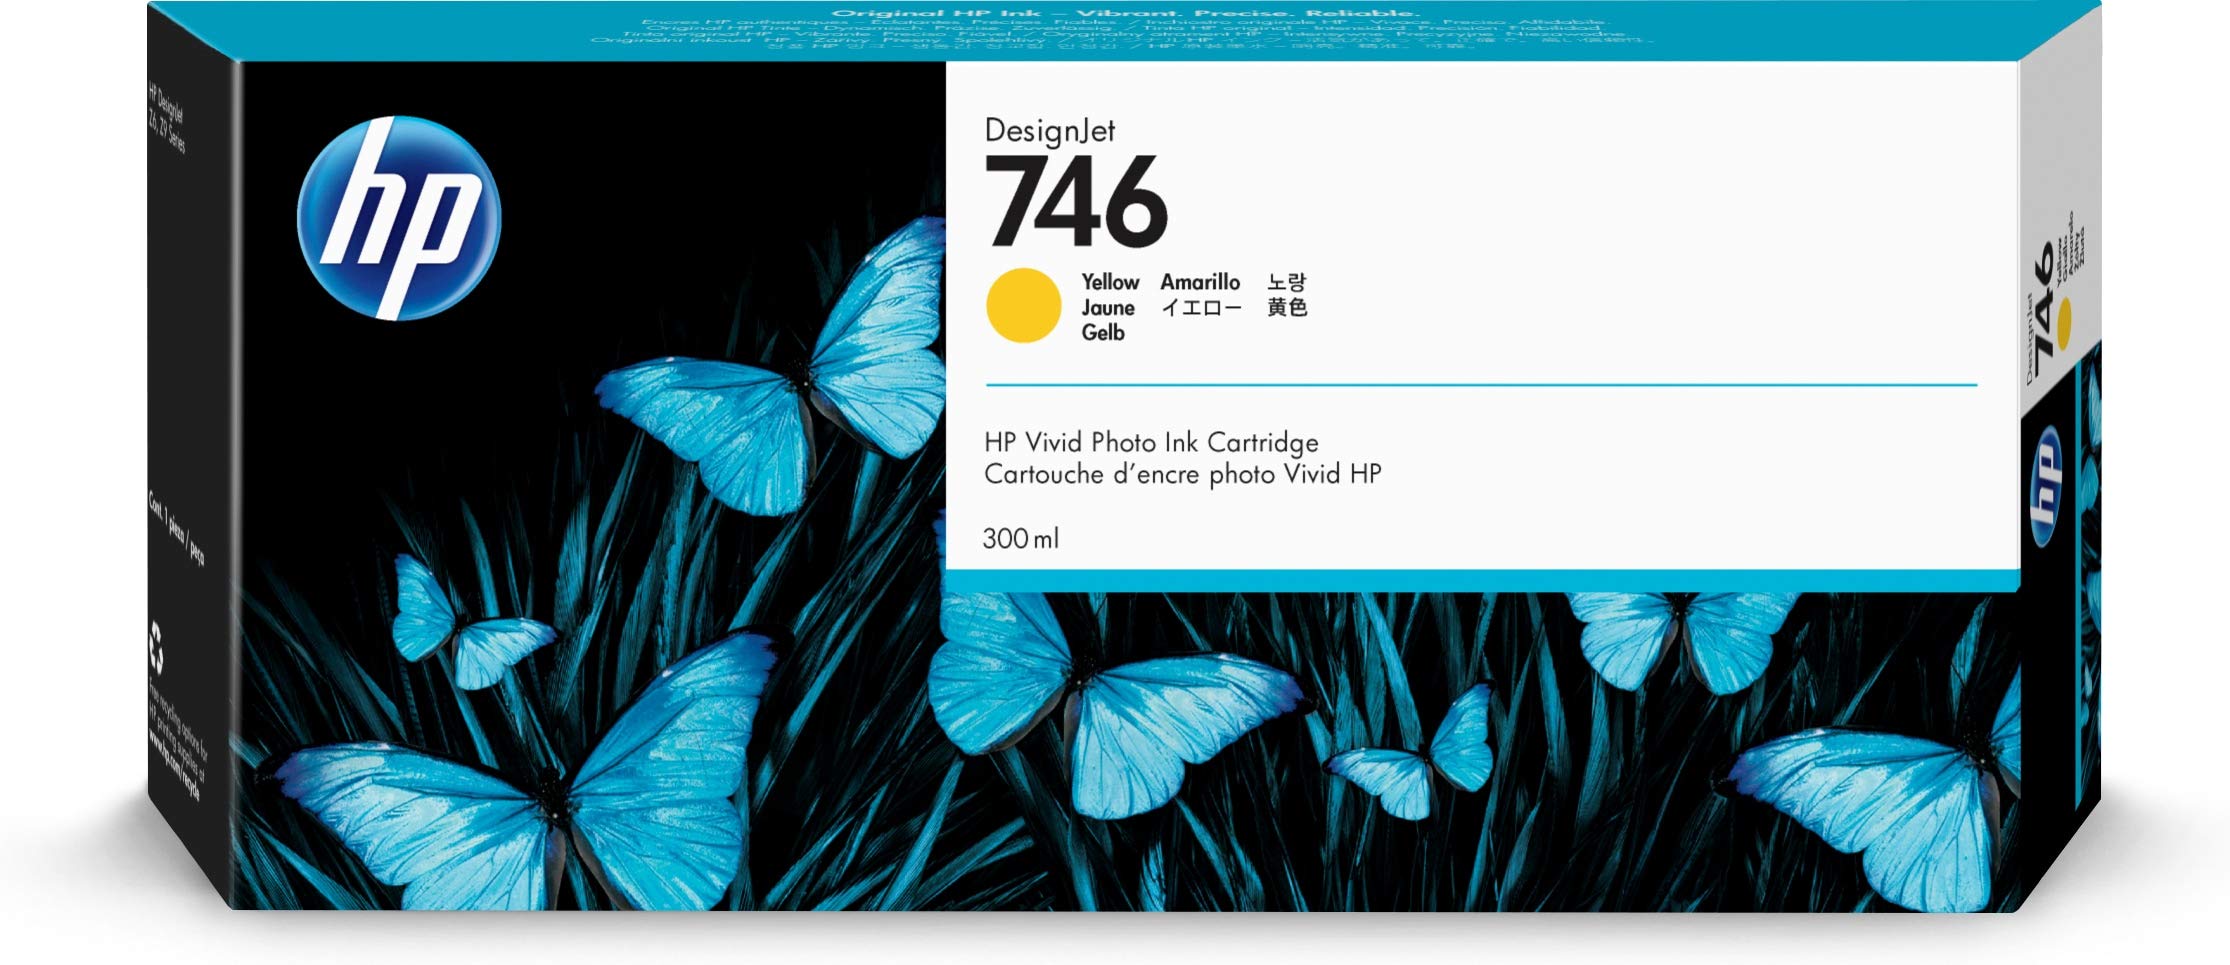 HP 适用于 DesignJet Z6 和 Z9+ 大幅面打印机的 746 黄色 300 毫升原装墨盒 (P2...